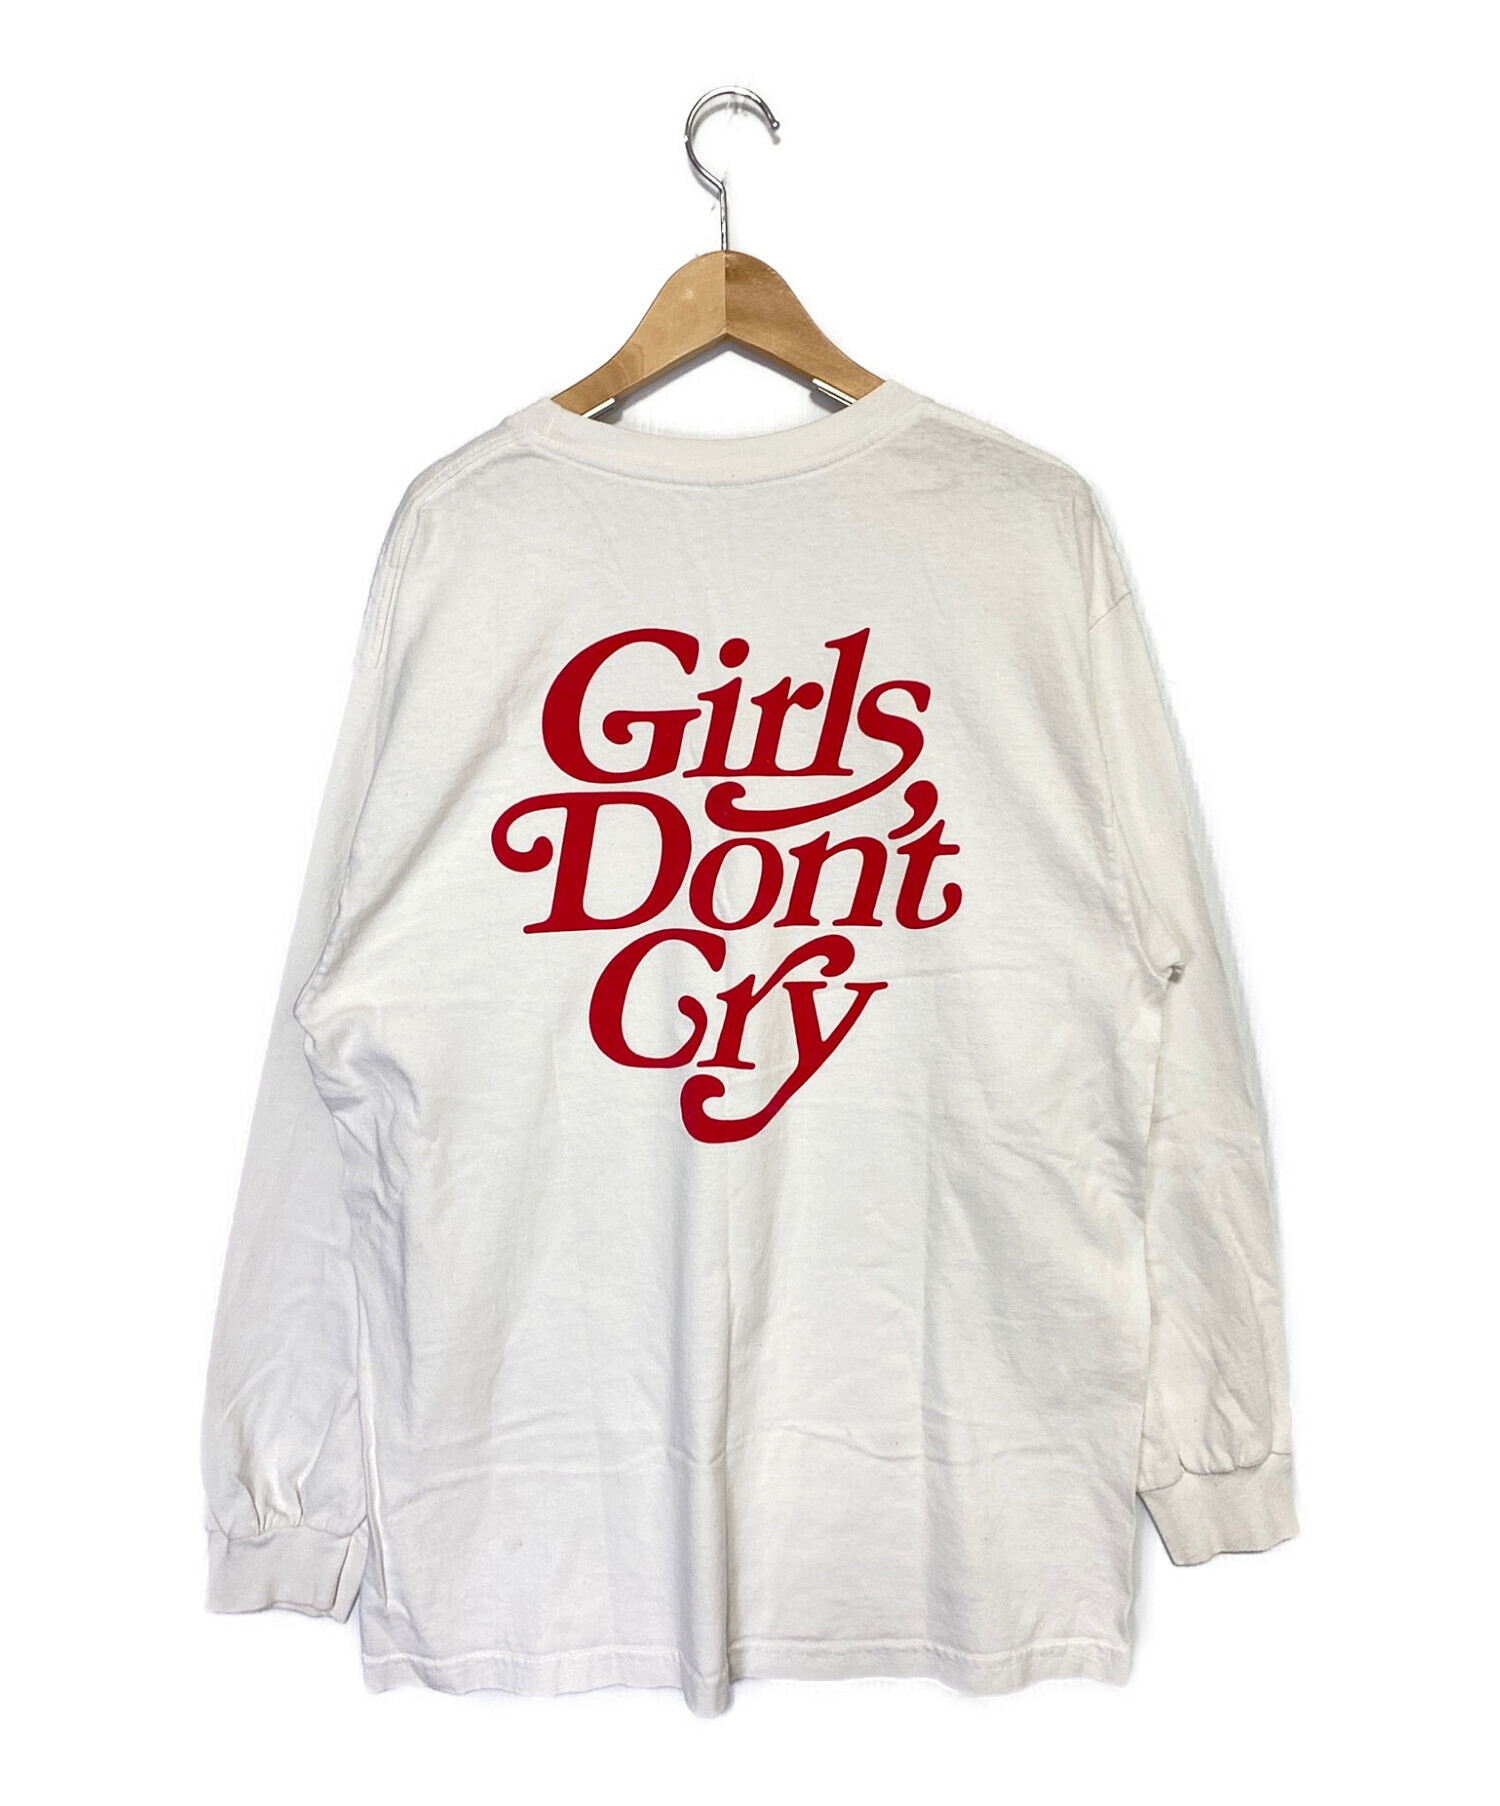 中古・古着通販】GIRLS DON'T CRY (ガールズドントクライ) 長袖Tシャツ